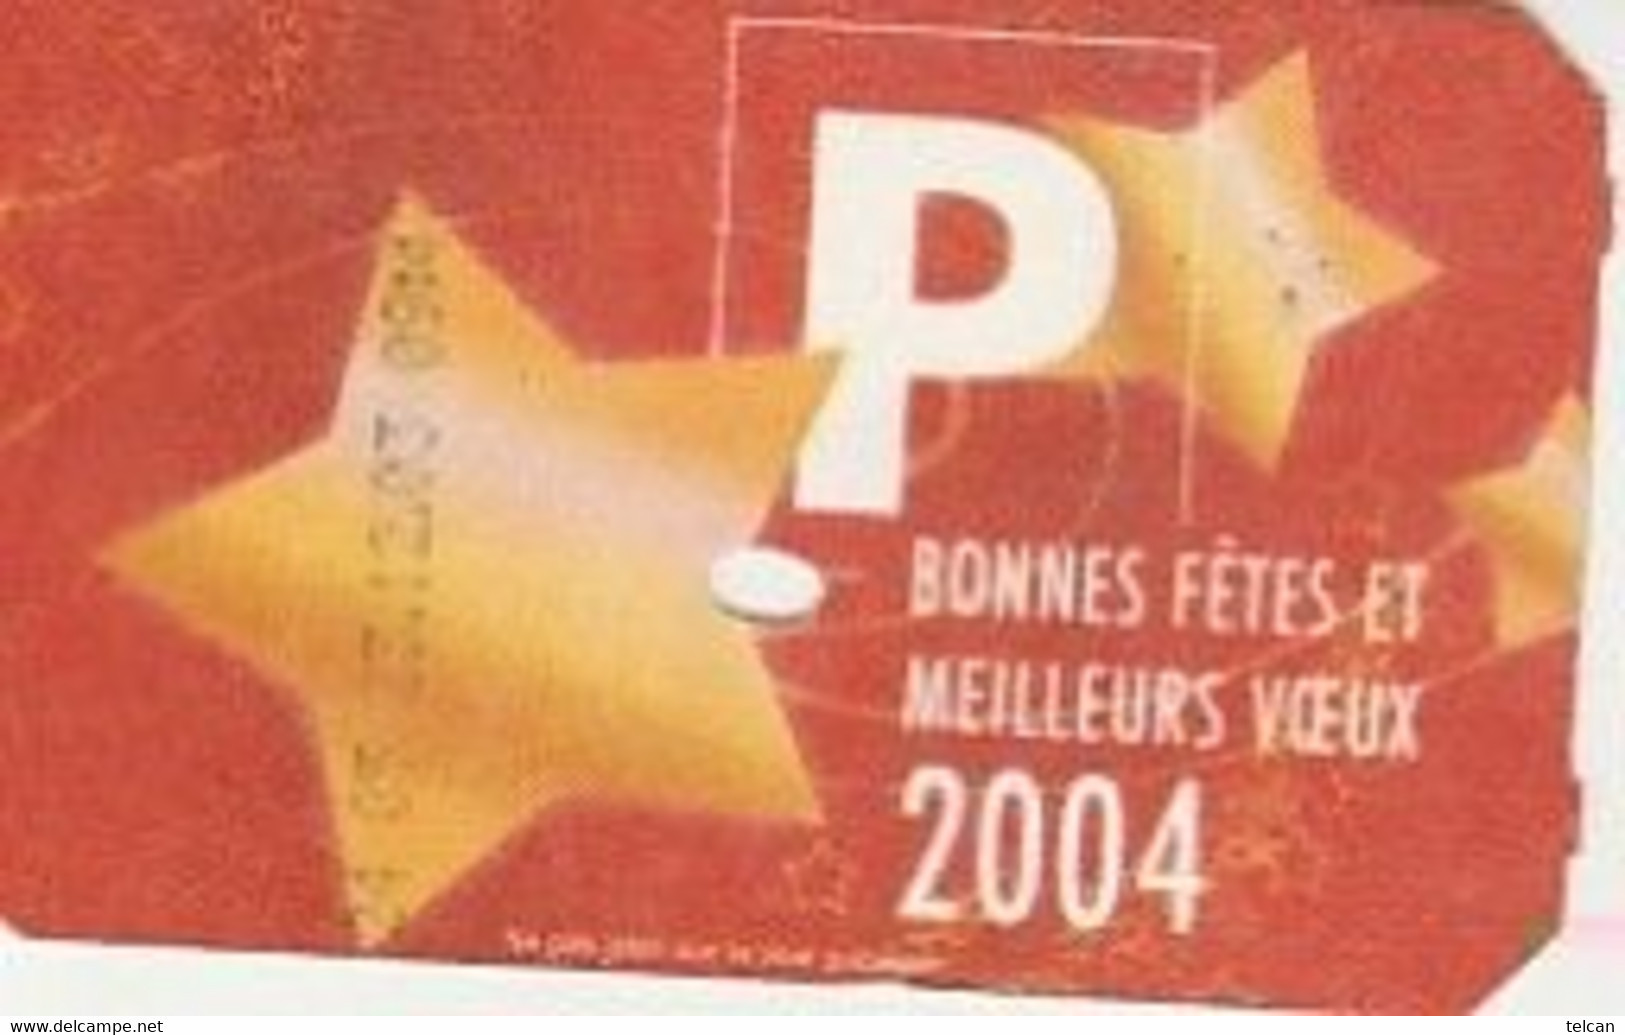 BONNES FETES ET MEILLEURS VOEUX 2004   Caen Cartonné - Parkkarten